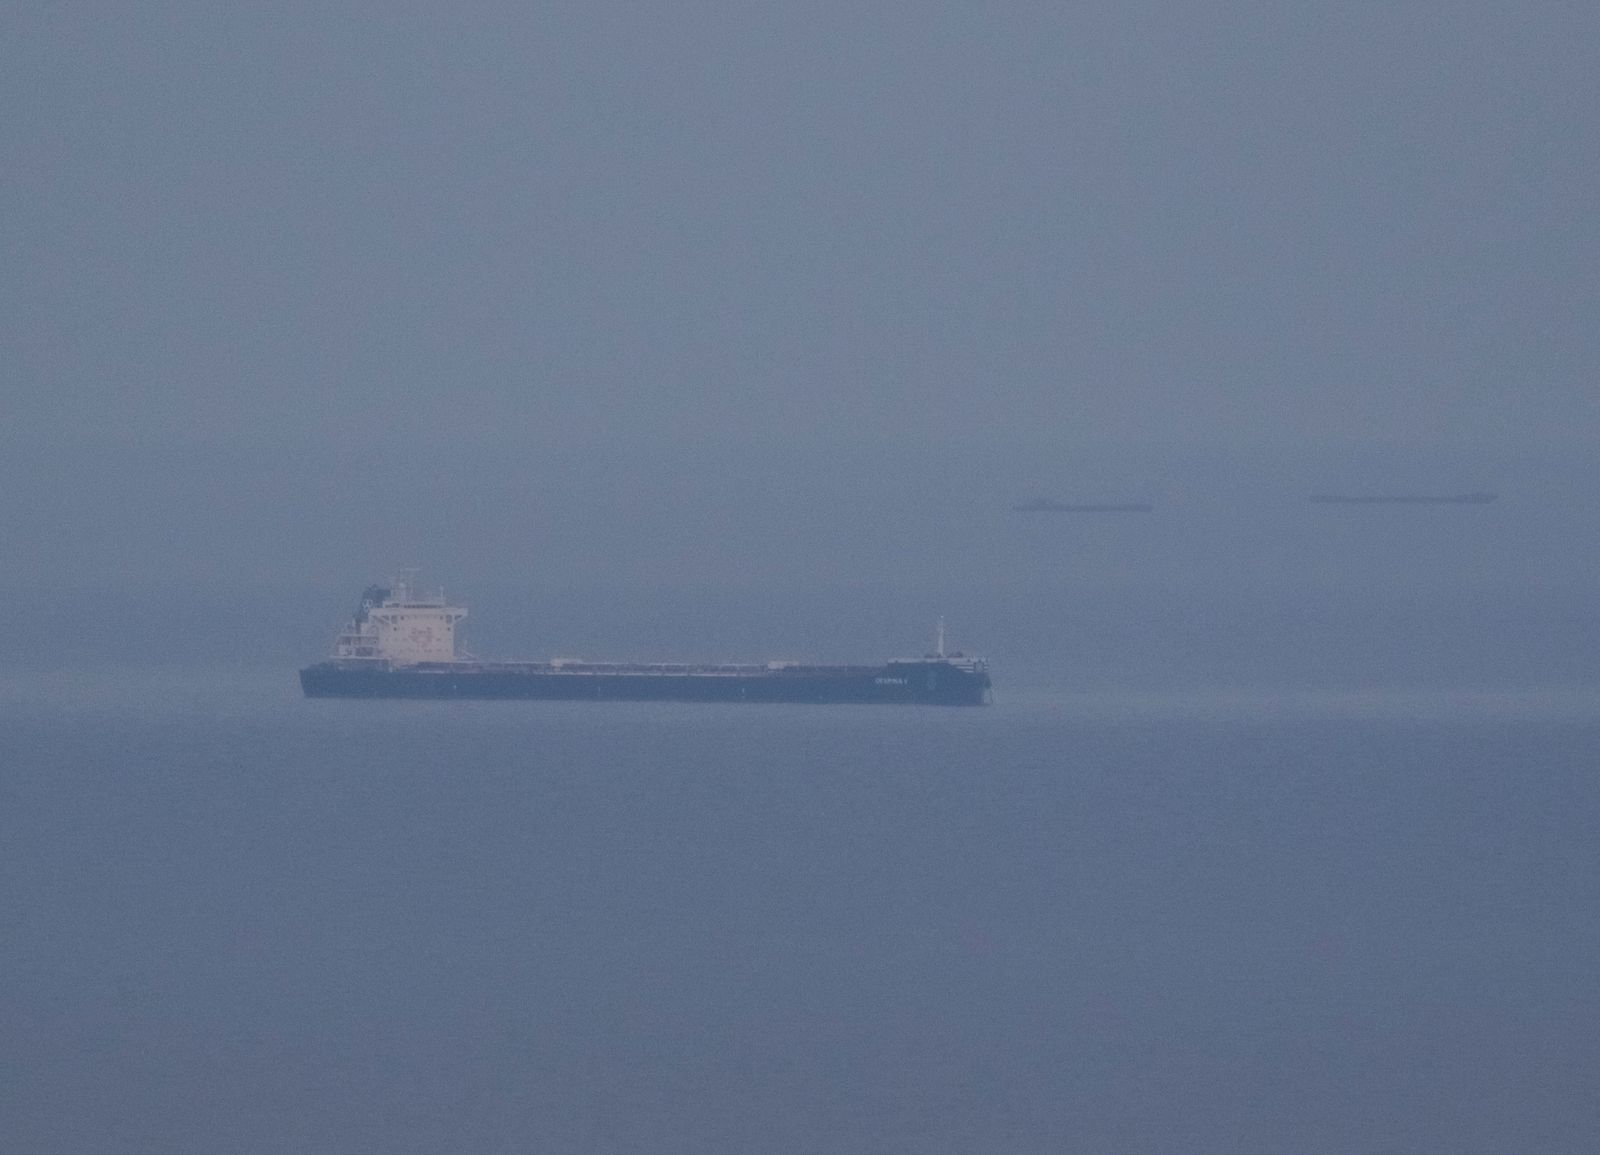 إحدى السفن المحملة بحبوب أوكرانية خلال توقفها في البحر الأسود بالقرب من ميناء أوديسا الأوكراني، 30 أكتوبر 2022 - REUTERS